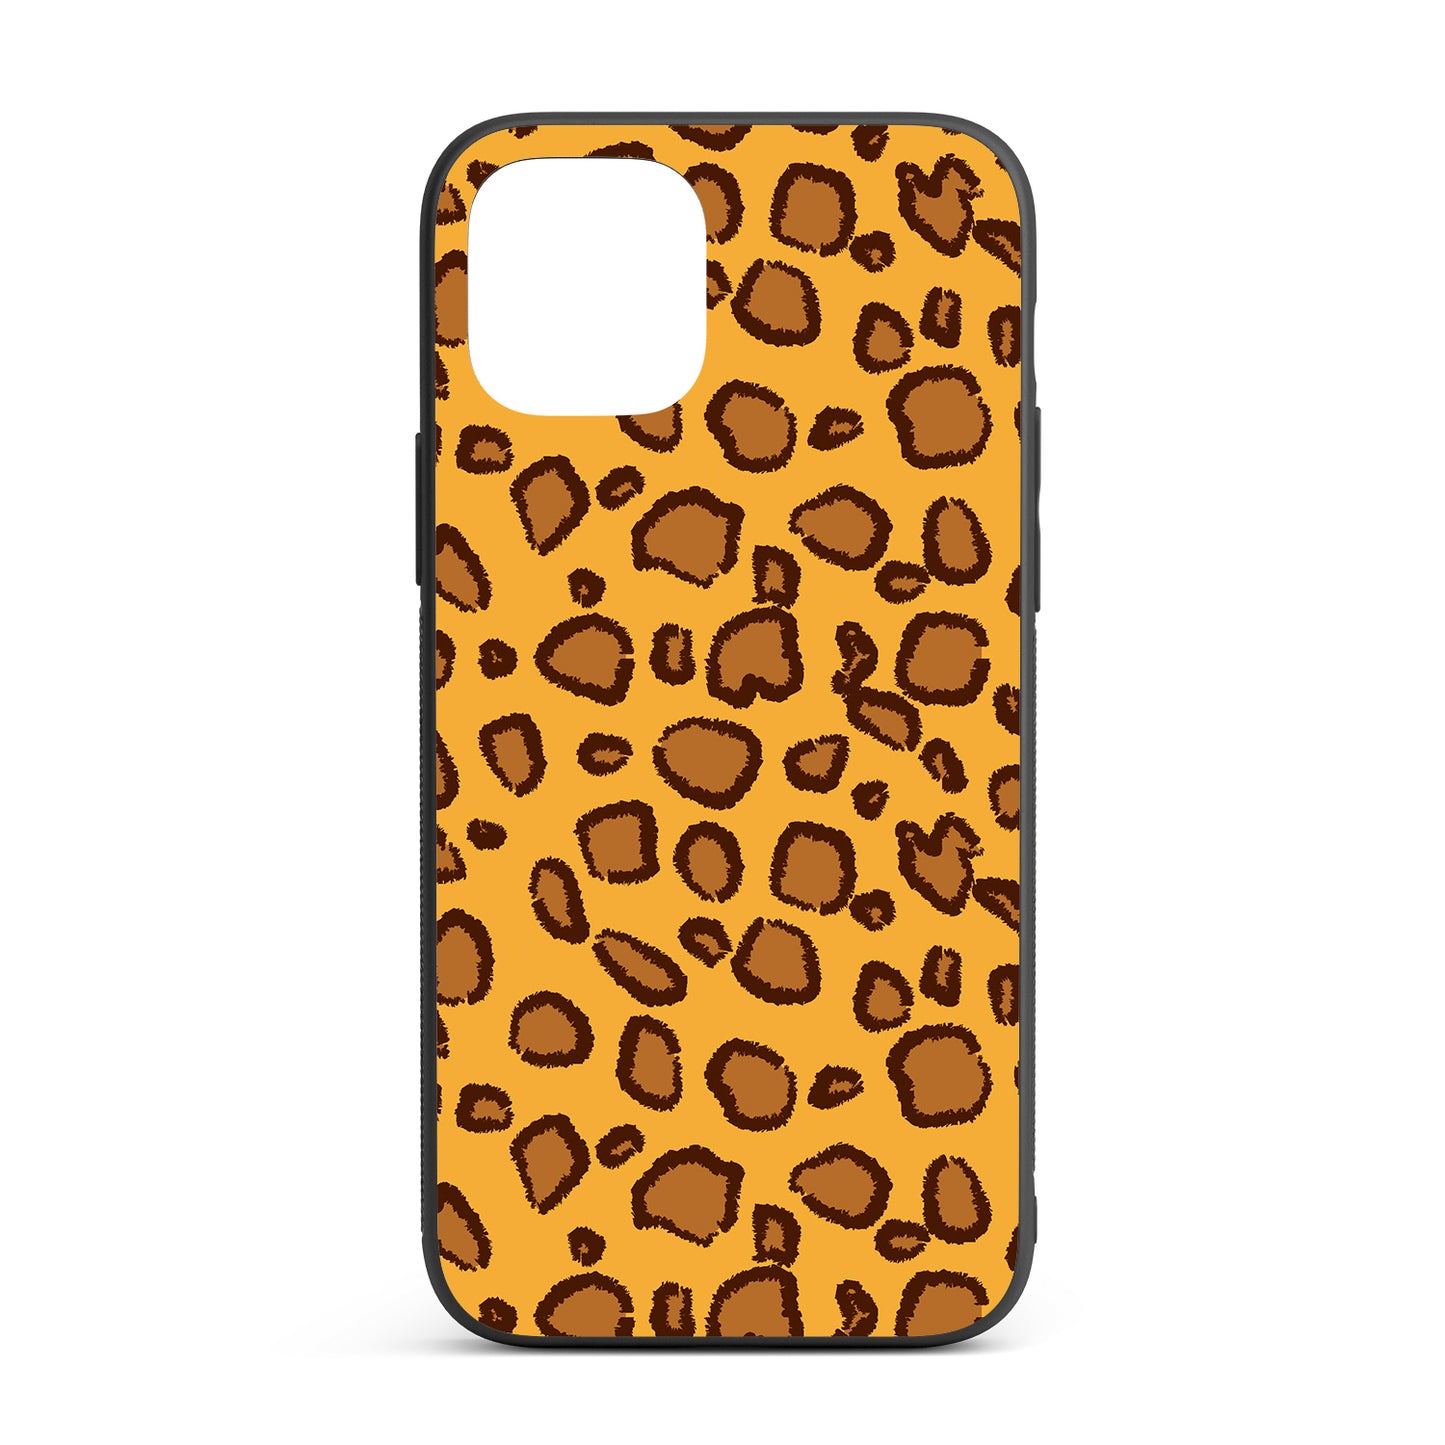 Leopard iPhone glass case